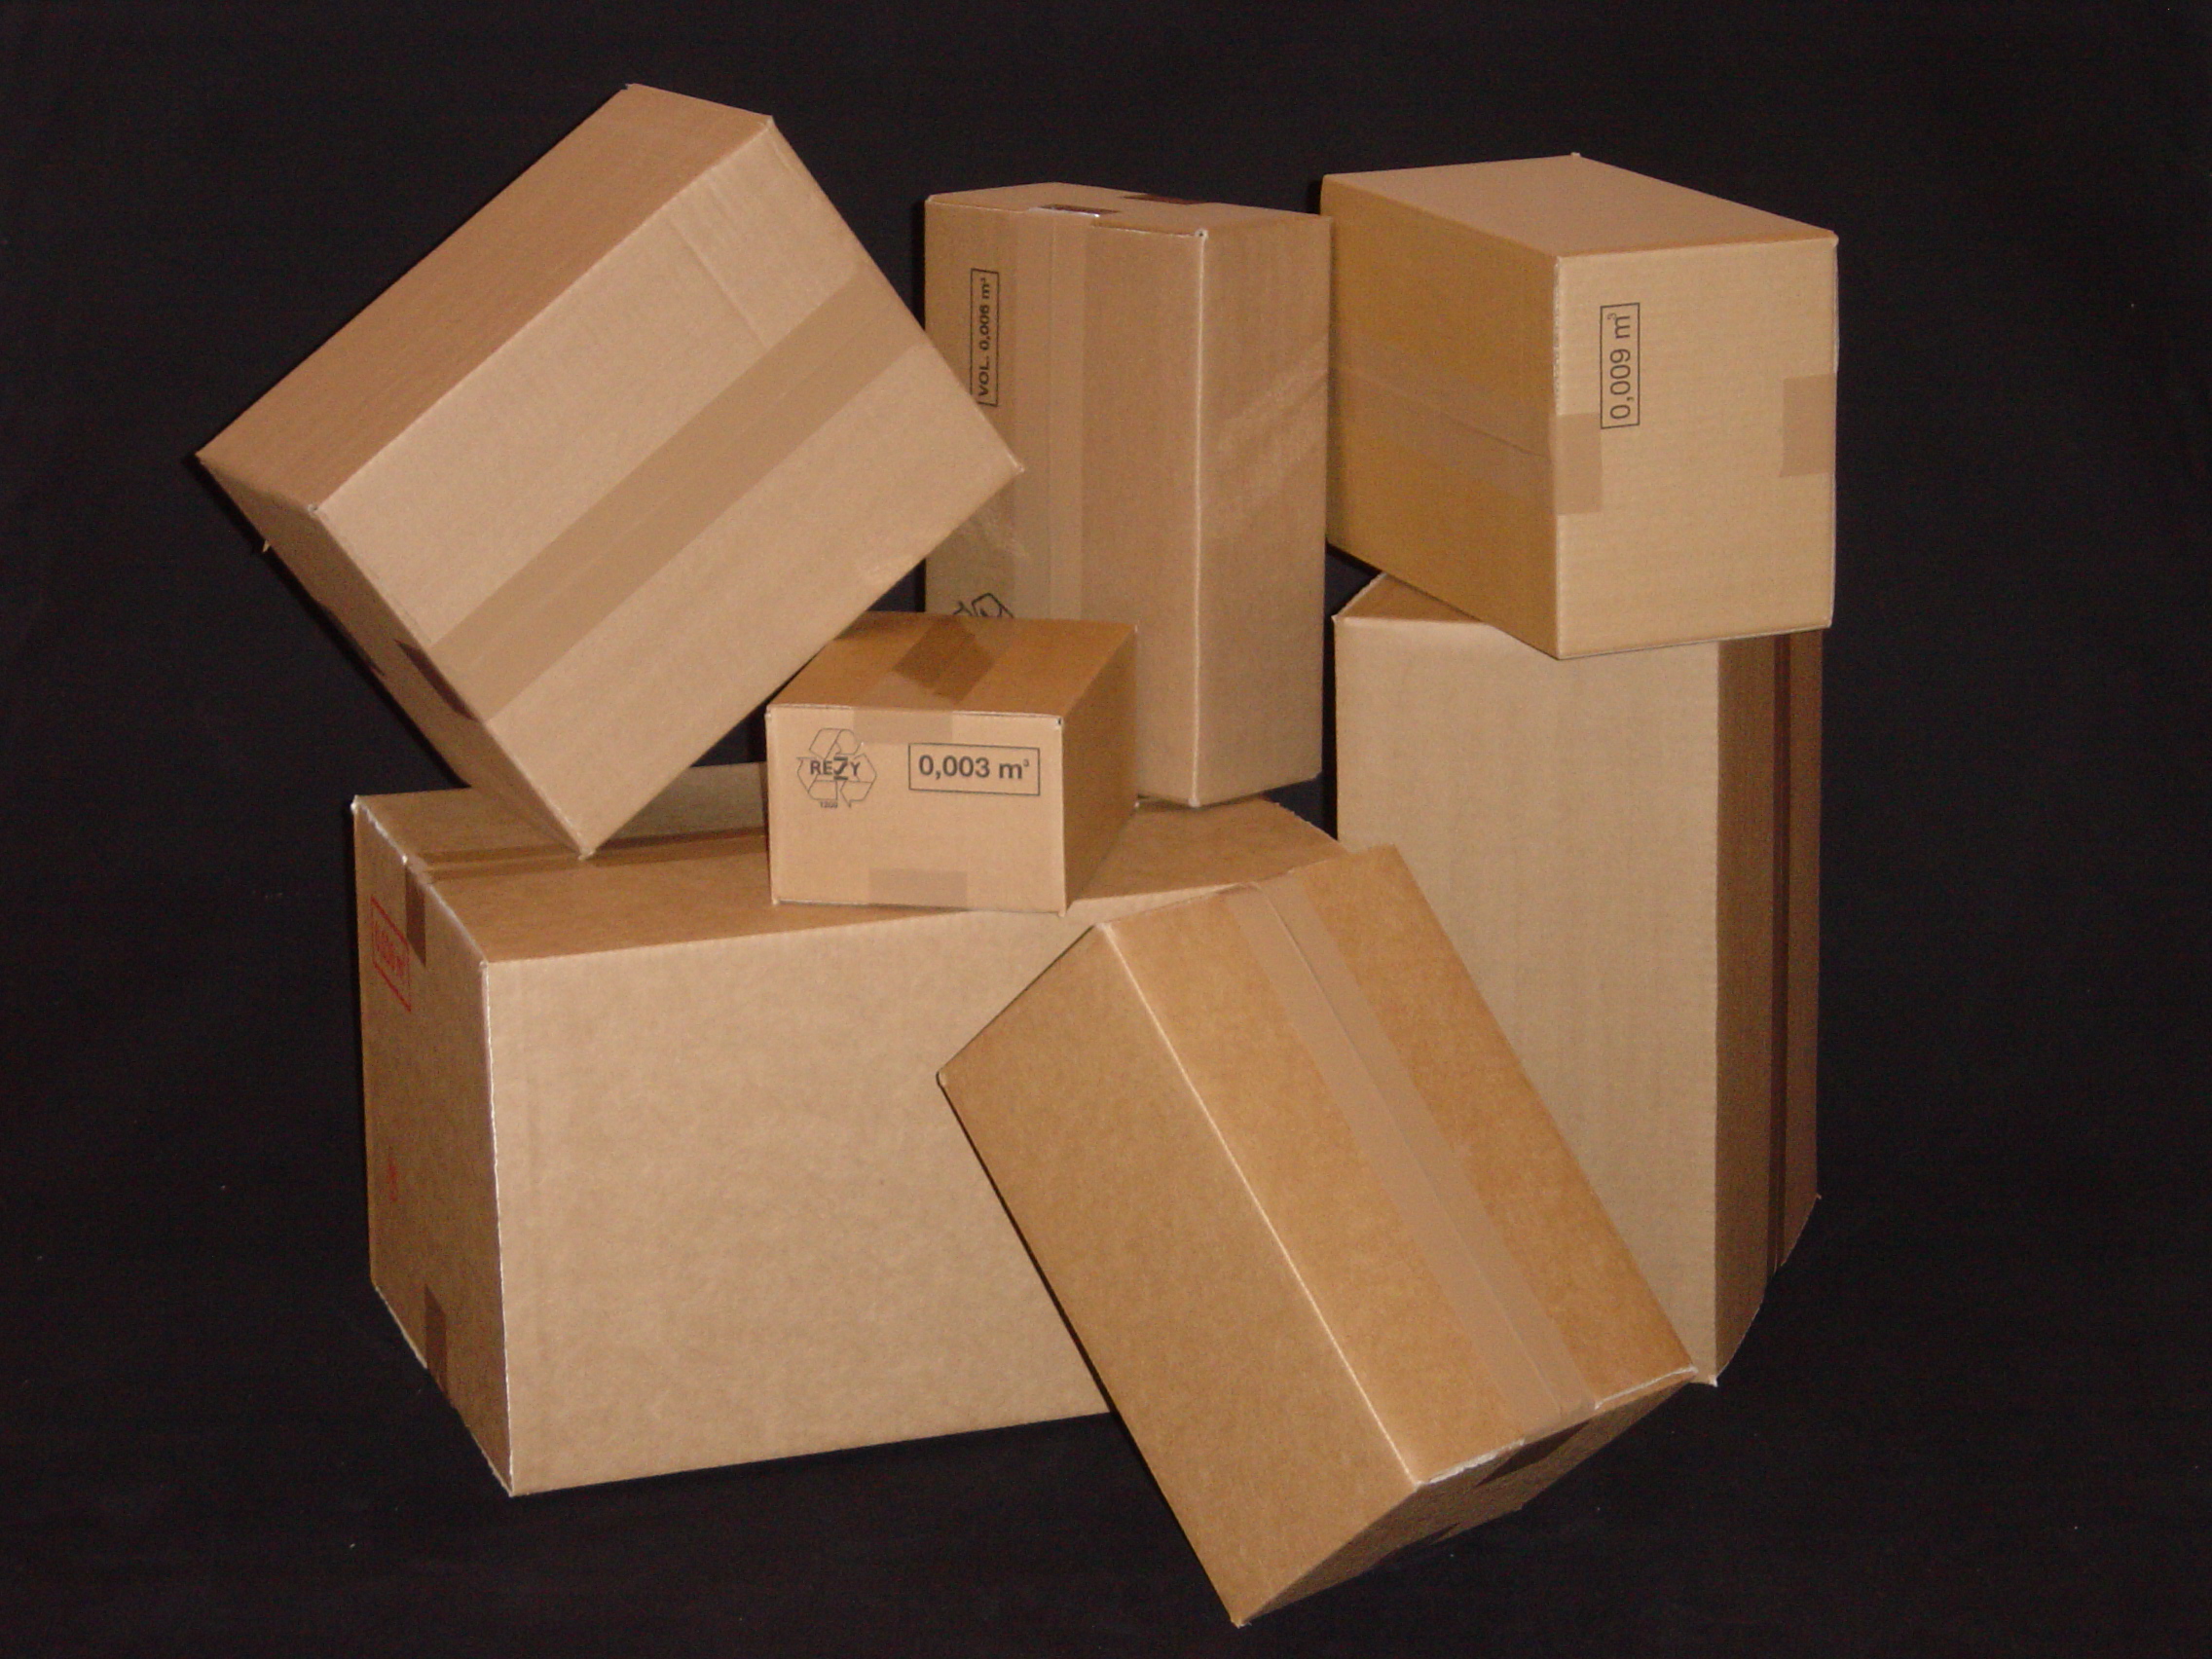 ЮниПак – производство упаковок и коробок из гофрокартона